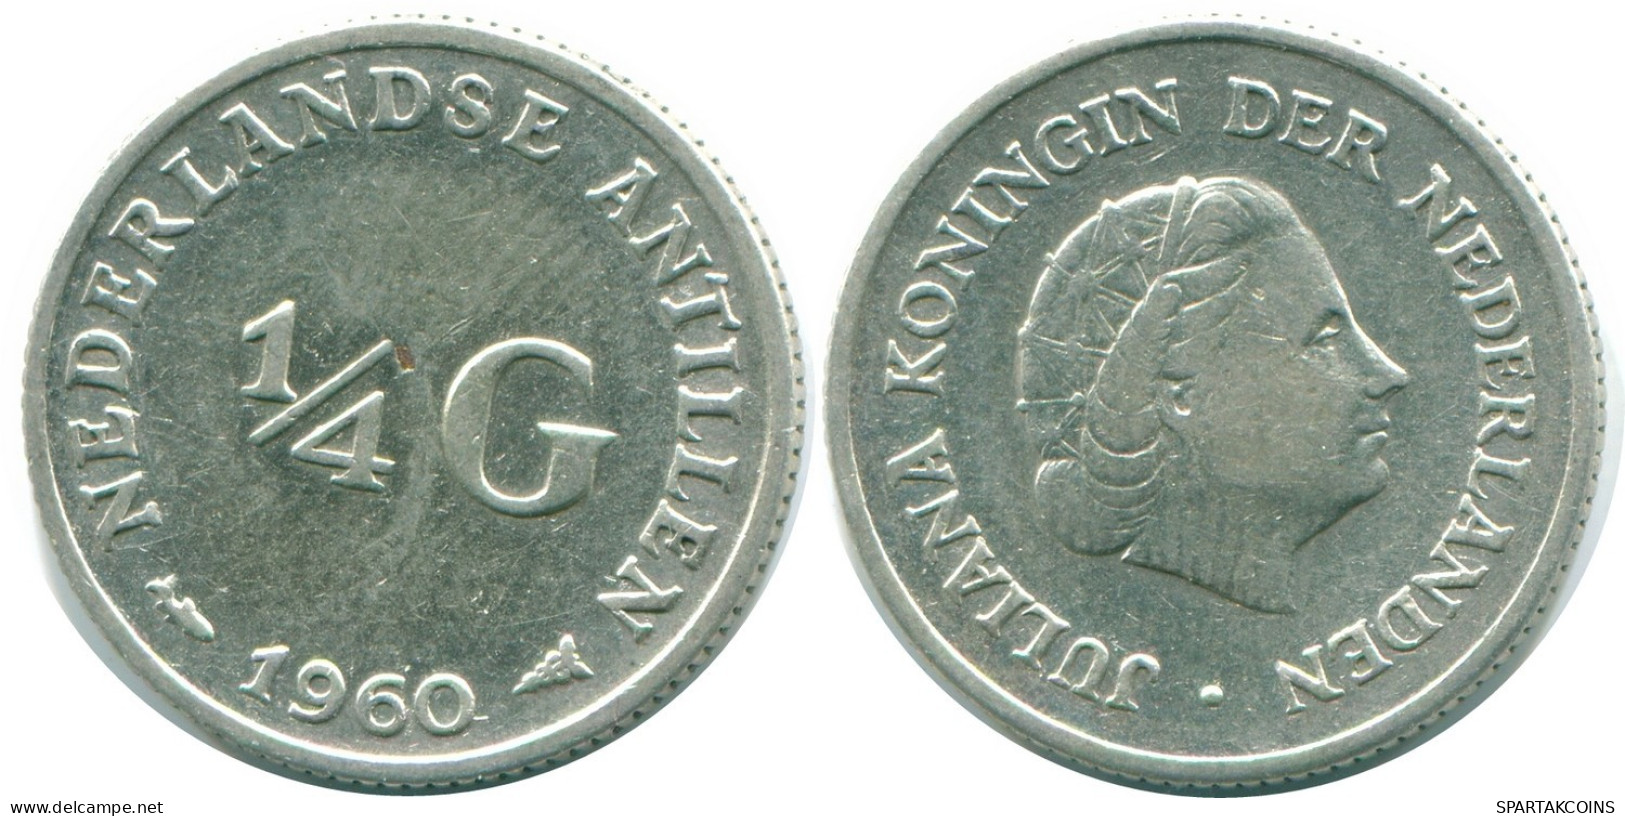 1/4 GULDEN 1960 NIEDERLÄNDISCHE ANTILLEN SILBER Koloniale Münze #NL11038.4.D.A - Nederlandse Antillen